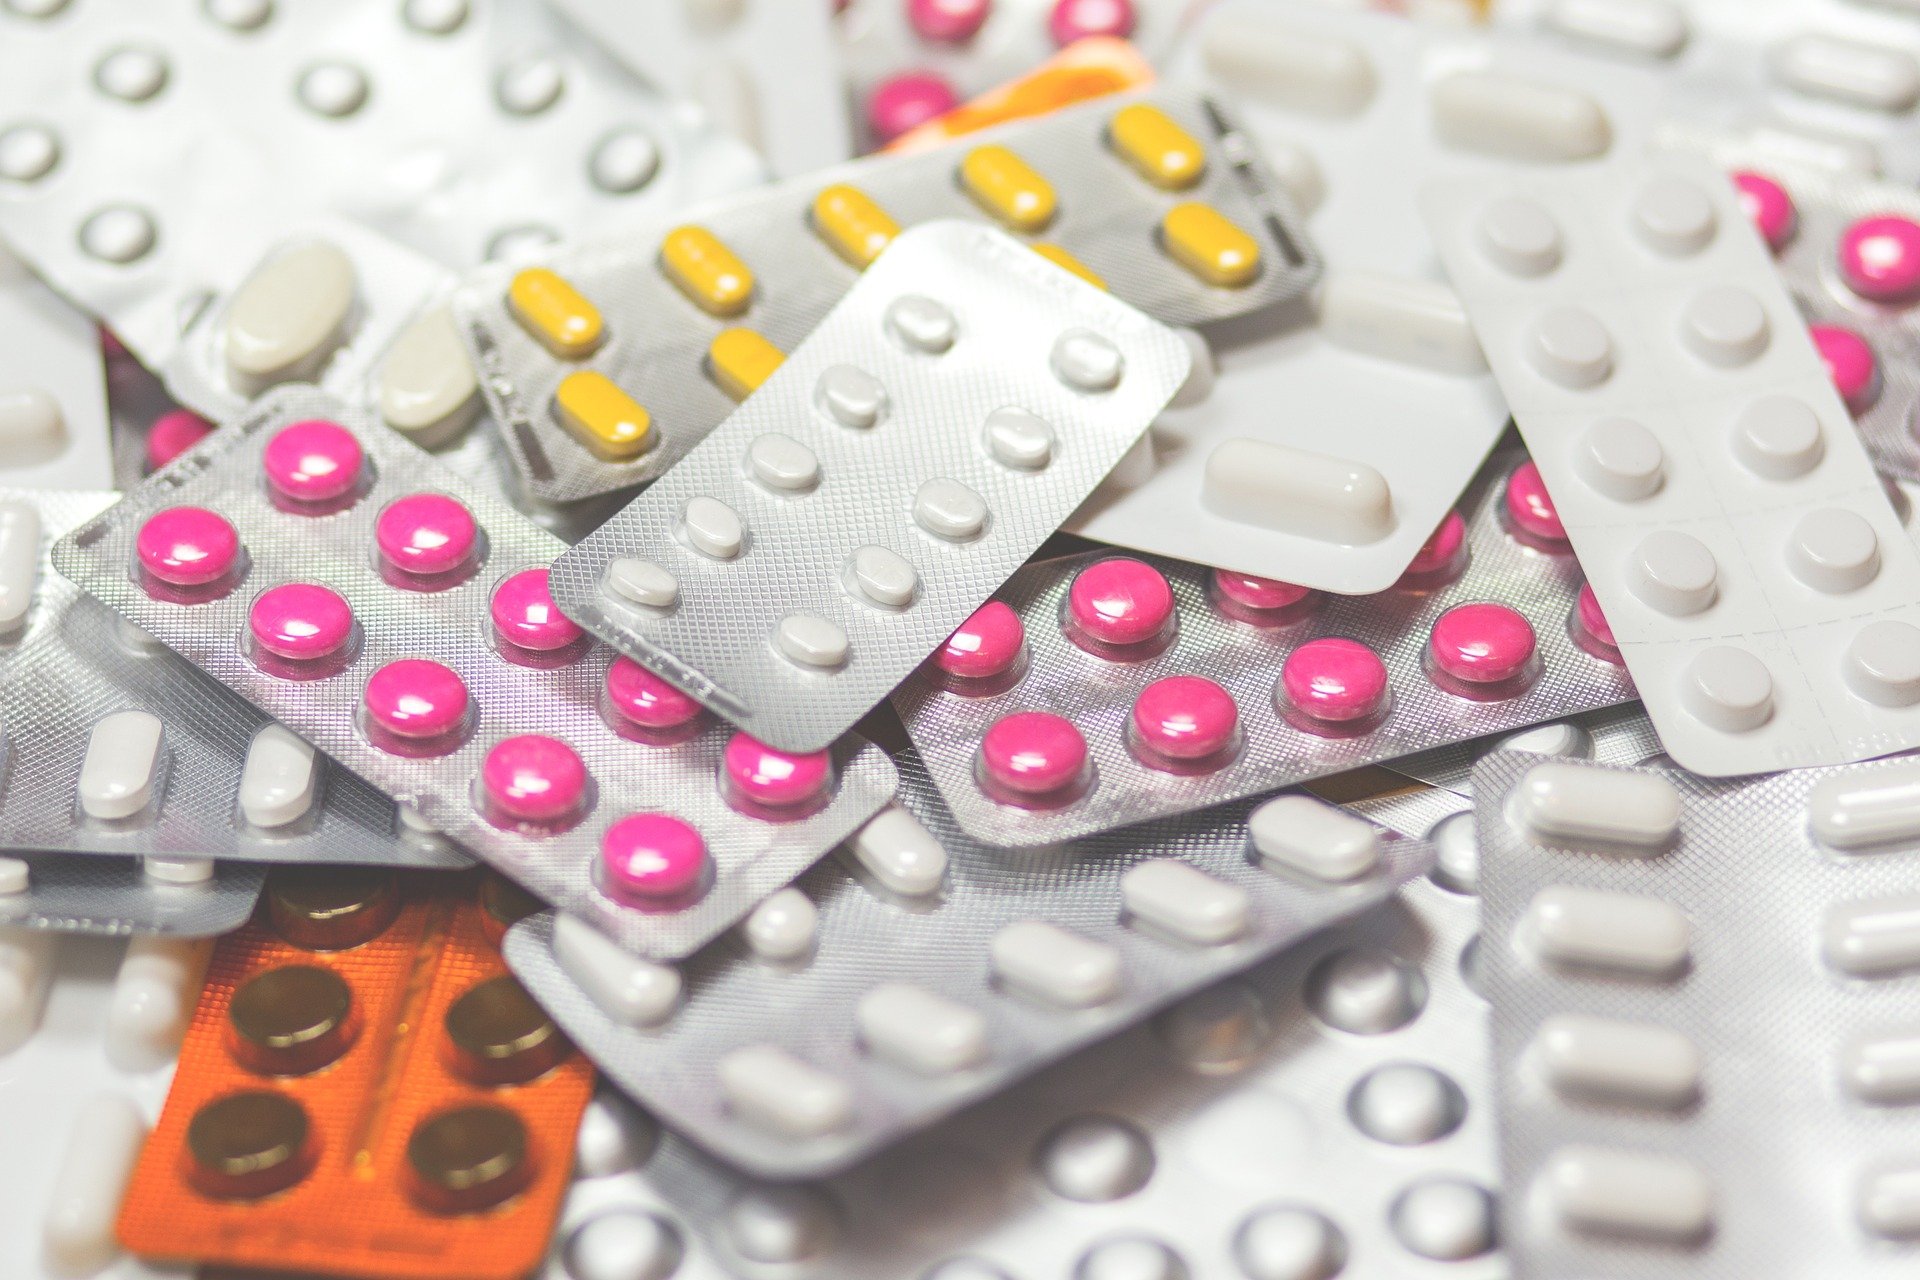 Росздравнадзор выдал первое разрешение на онлайн-торговлю рецептурными лекарствами